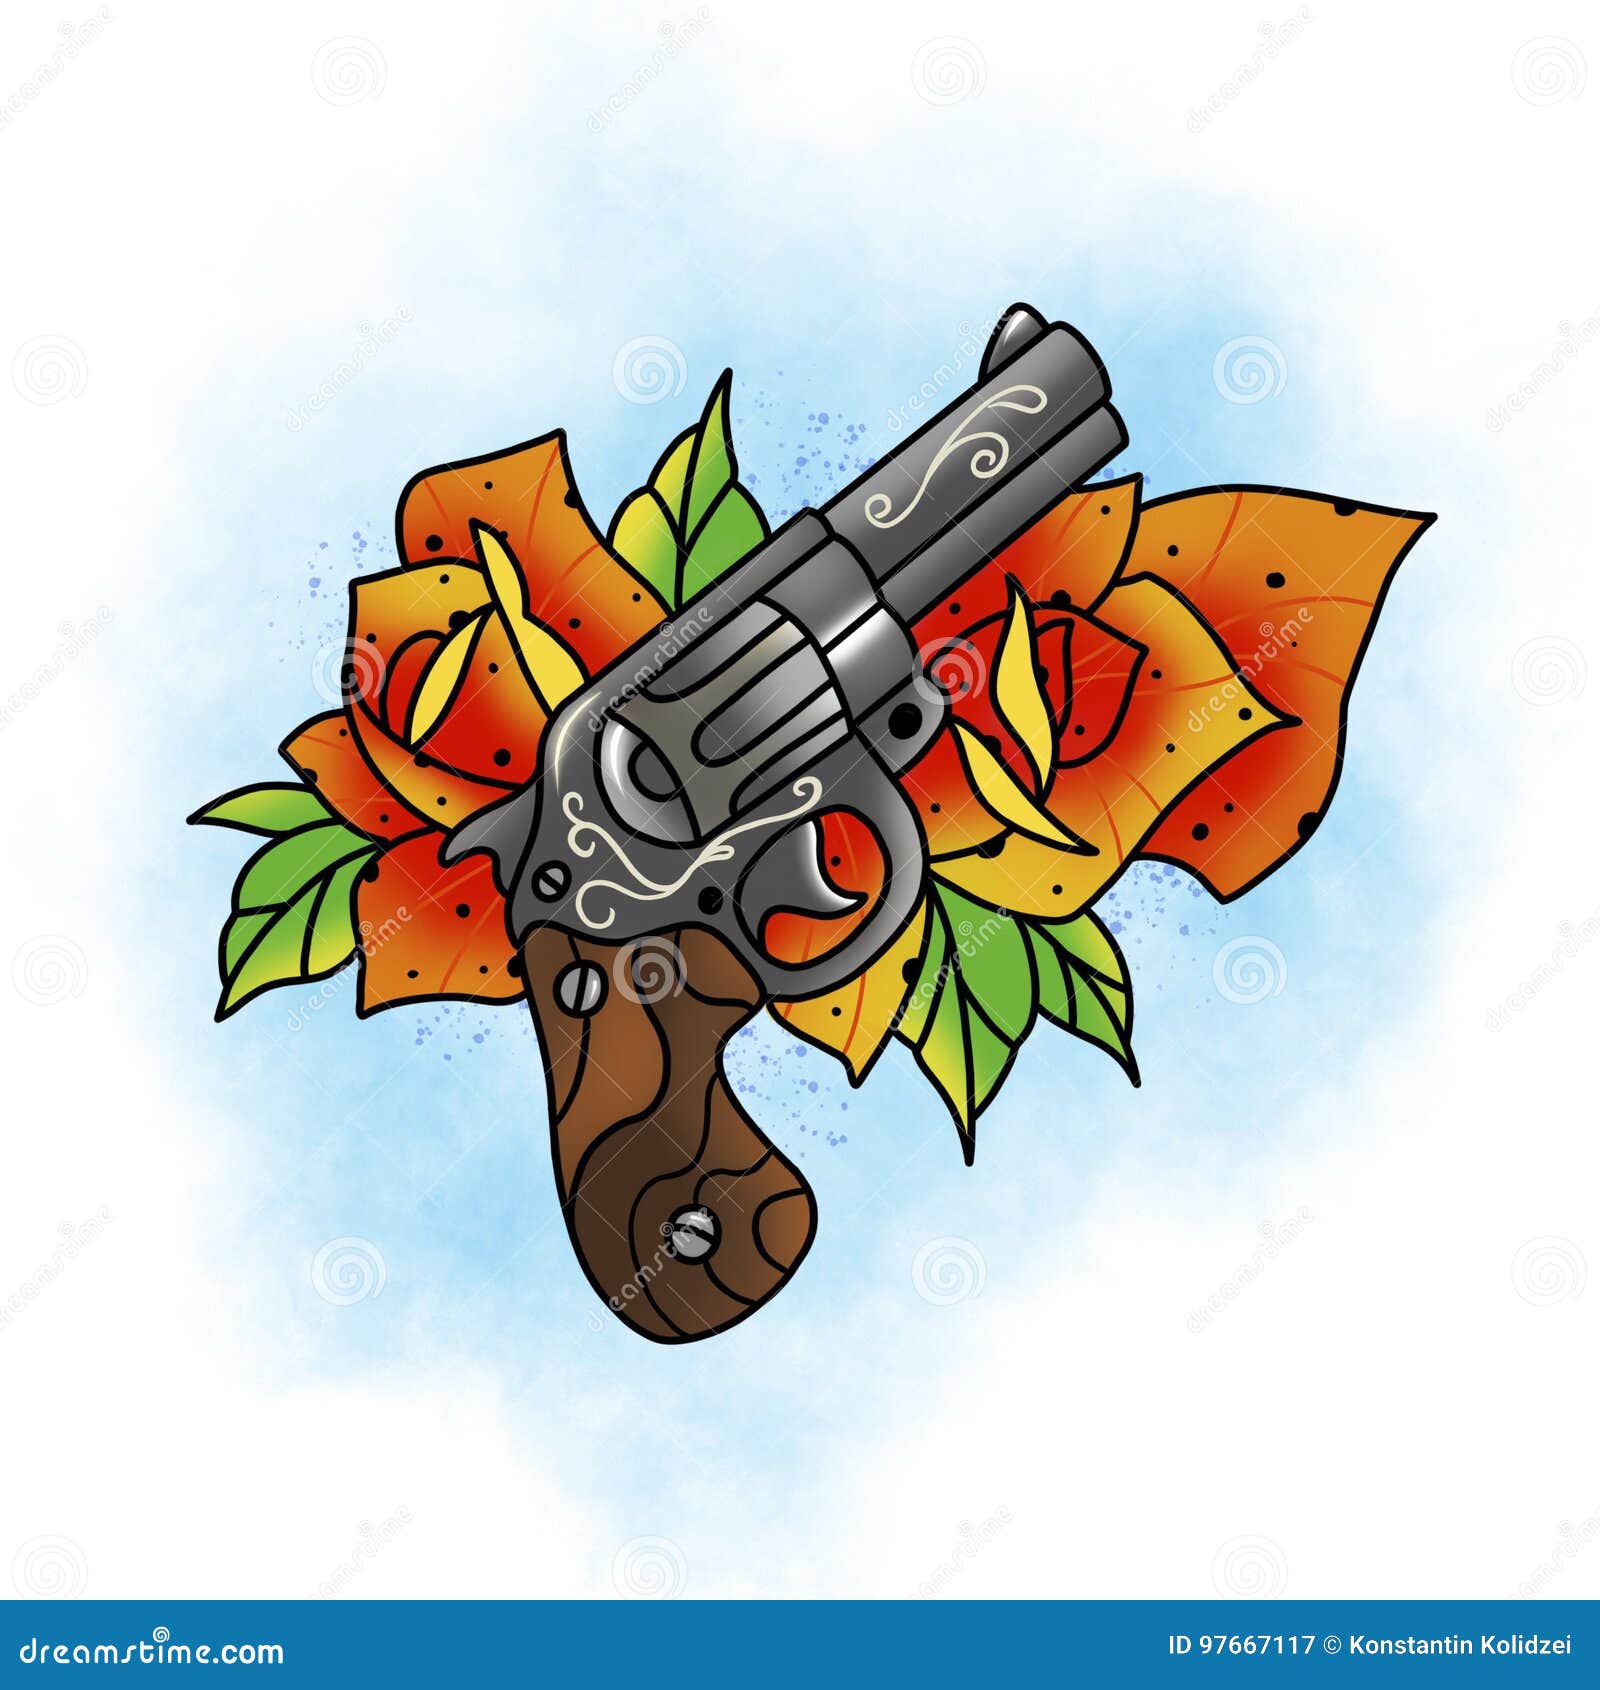 Megan Kalenowski on Twitter rossi357 revolver gun roses tattoo  newtattoo ghostdogtattoo httptco1kGpnQbJvl  Twitter